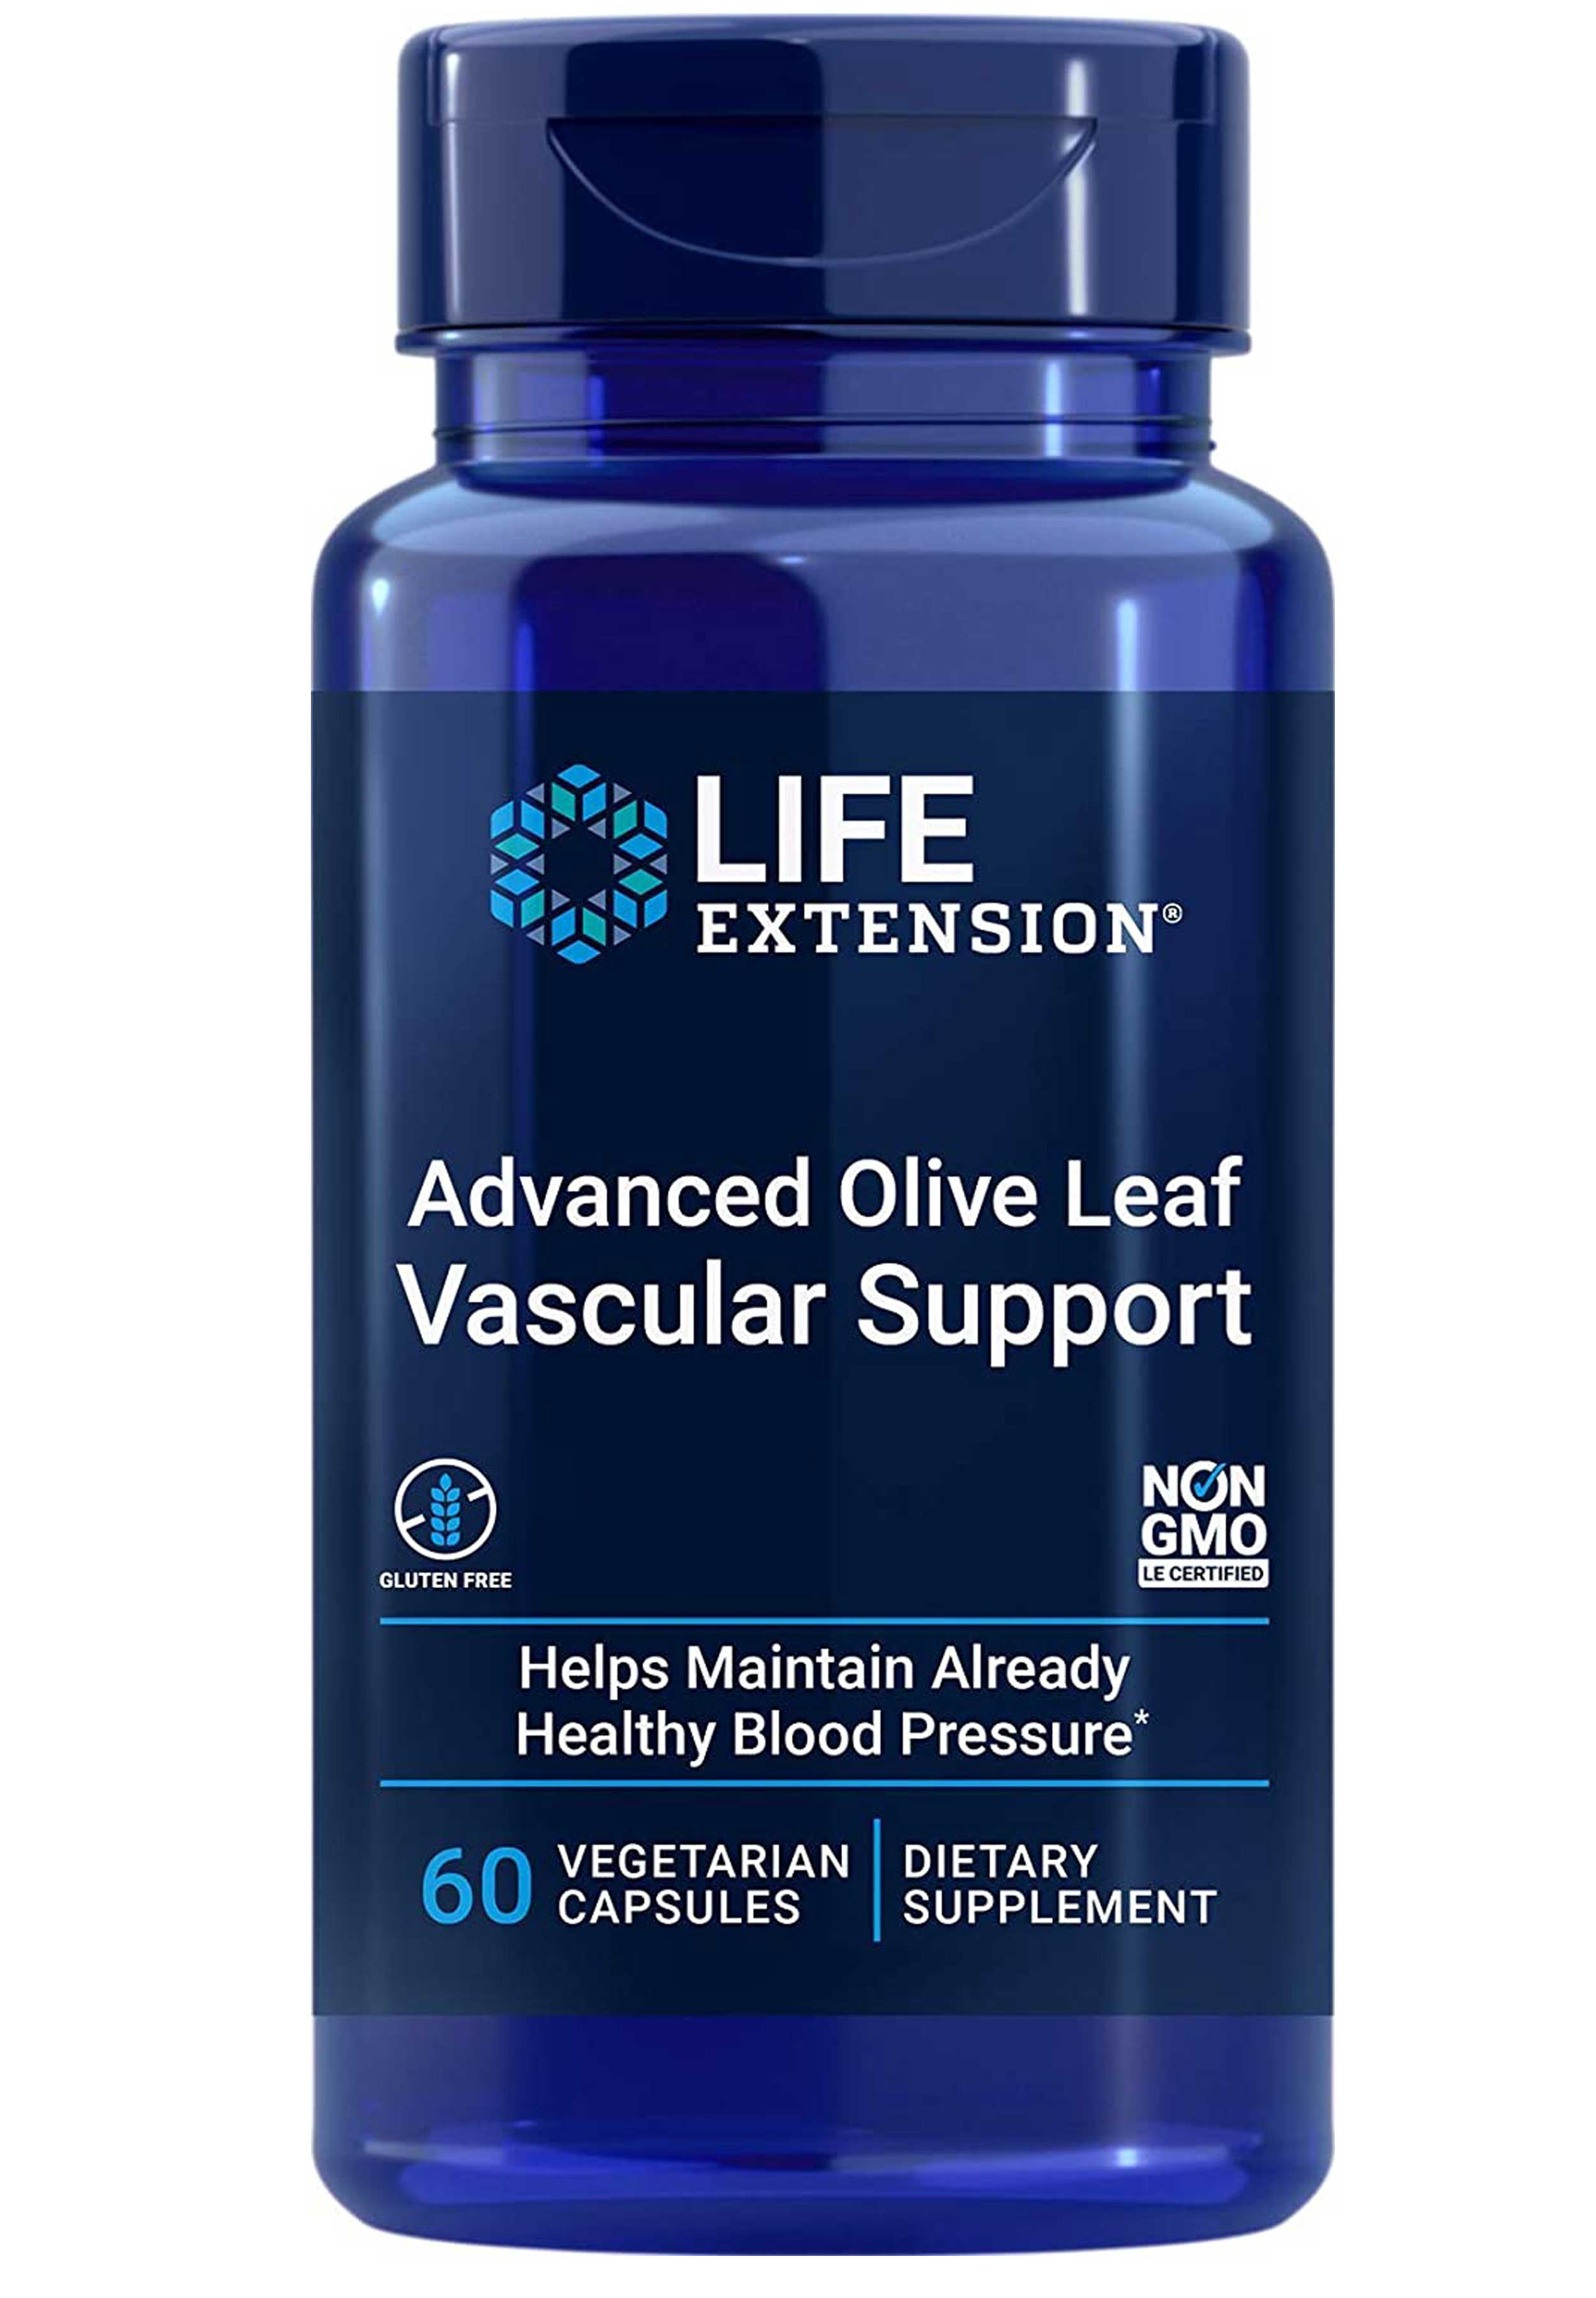 Life Extension Advanced Olive Leaf Vascular Support